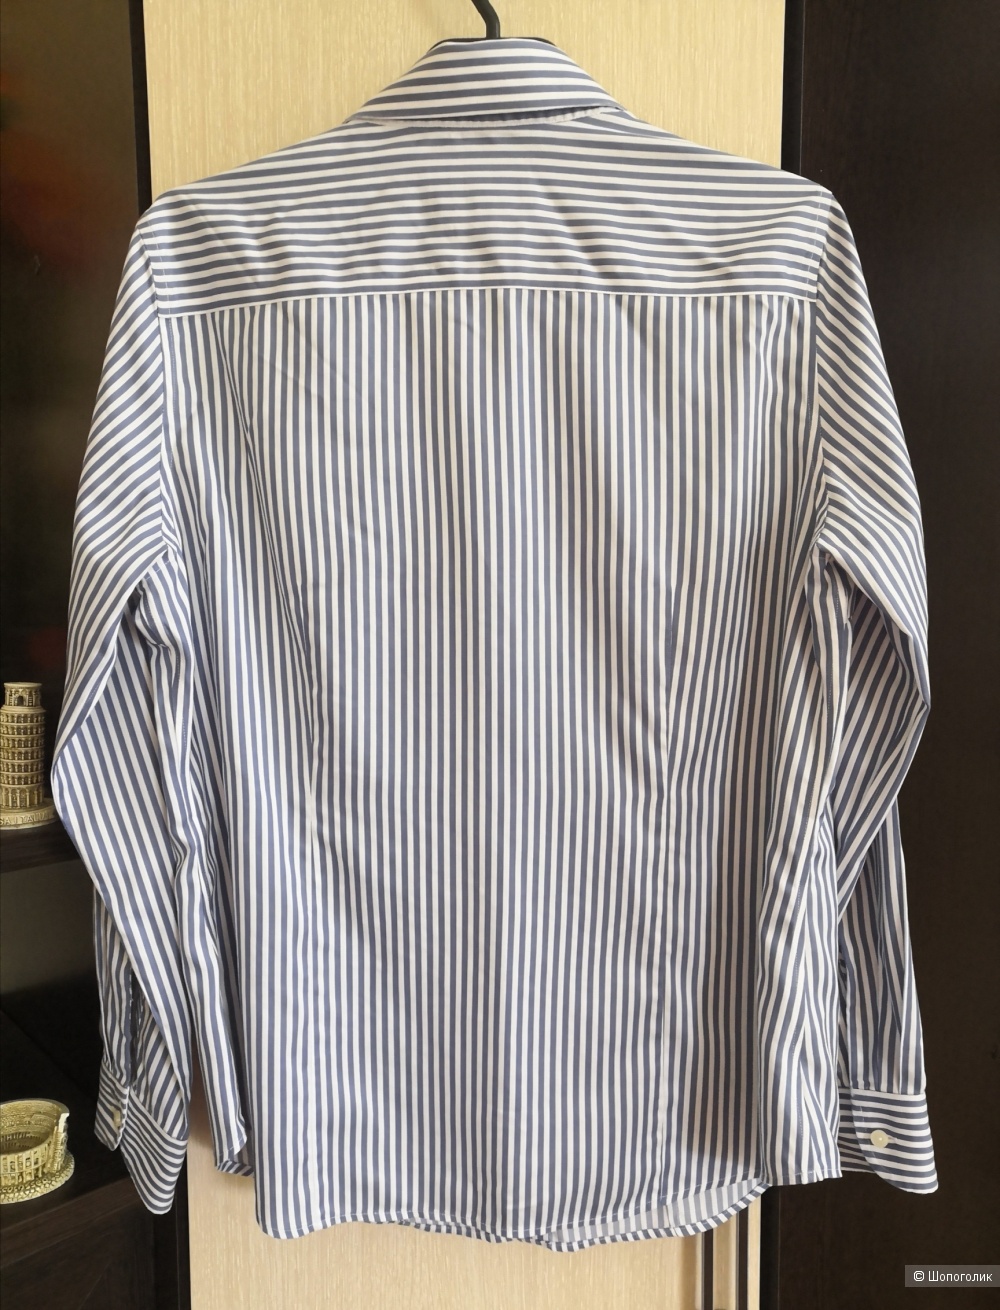 Рубашка Charles Tyrwhitt, размер 46-48